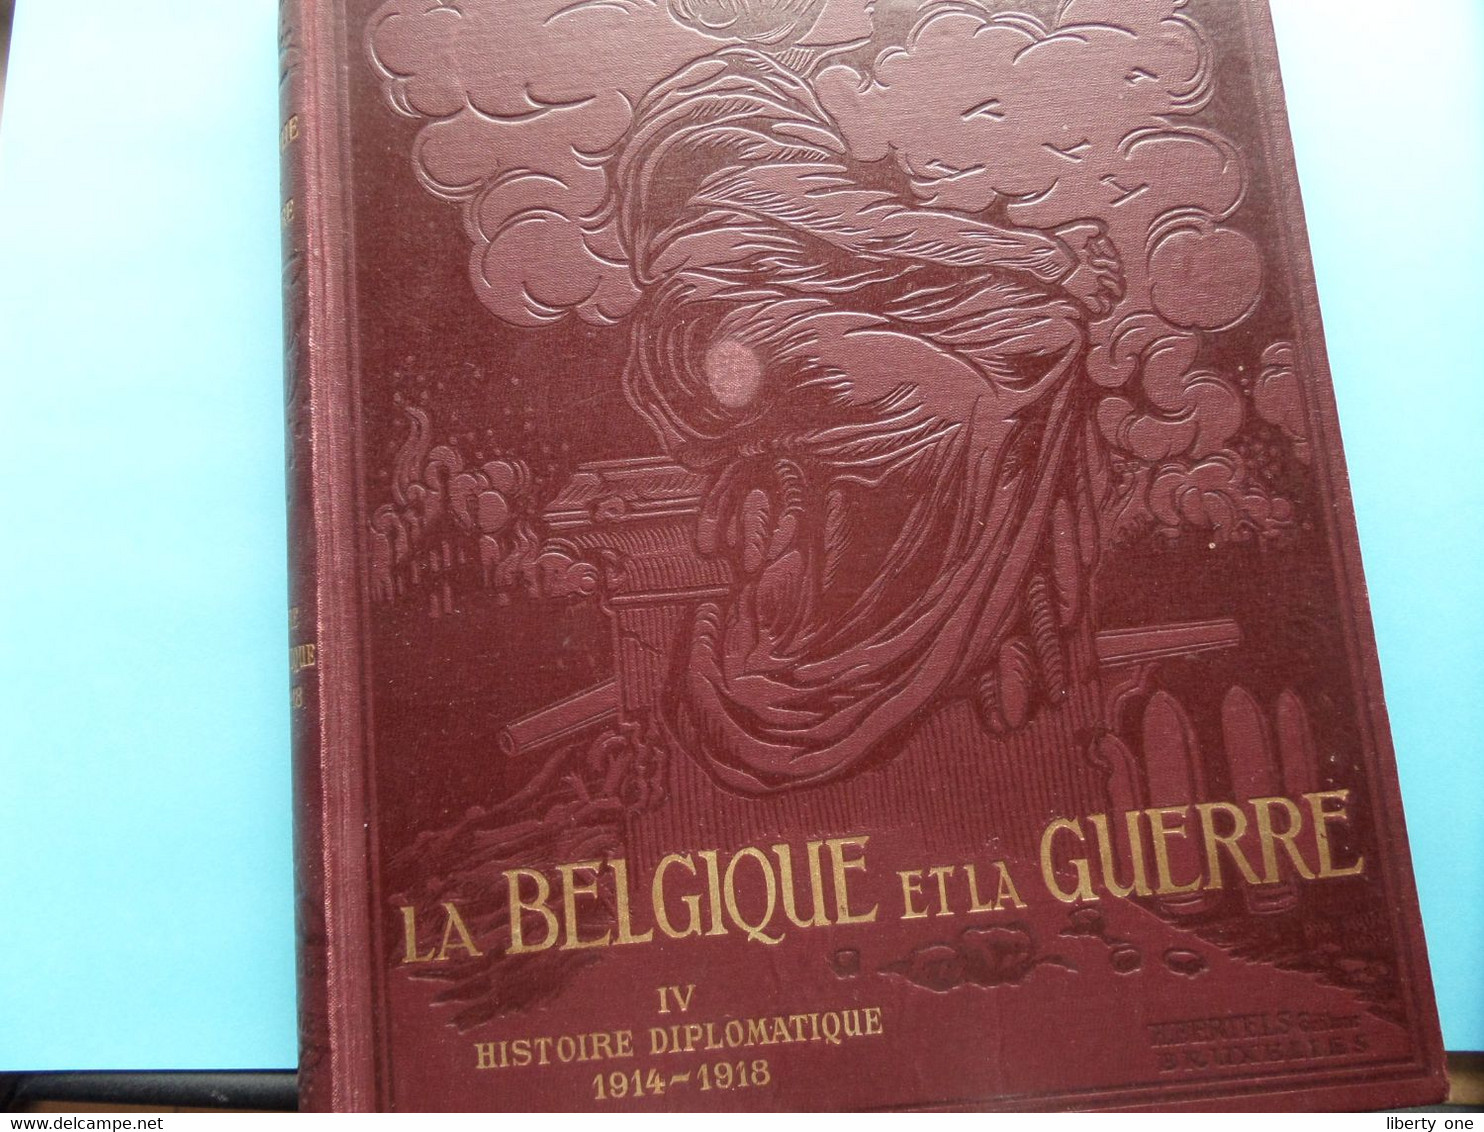 La BELGIQUE Et La GUERRE - IV Histoire Diplomatique 1914-1918 ( Edit. H. BERTELS Bruxelles / A. MEERSMANS Relieur ) ! - French